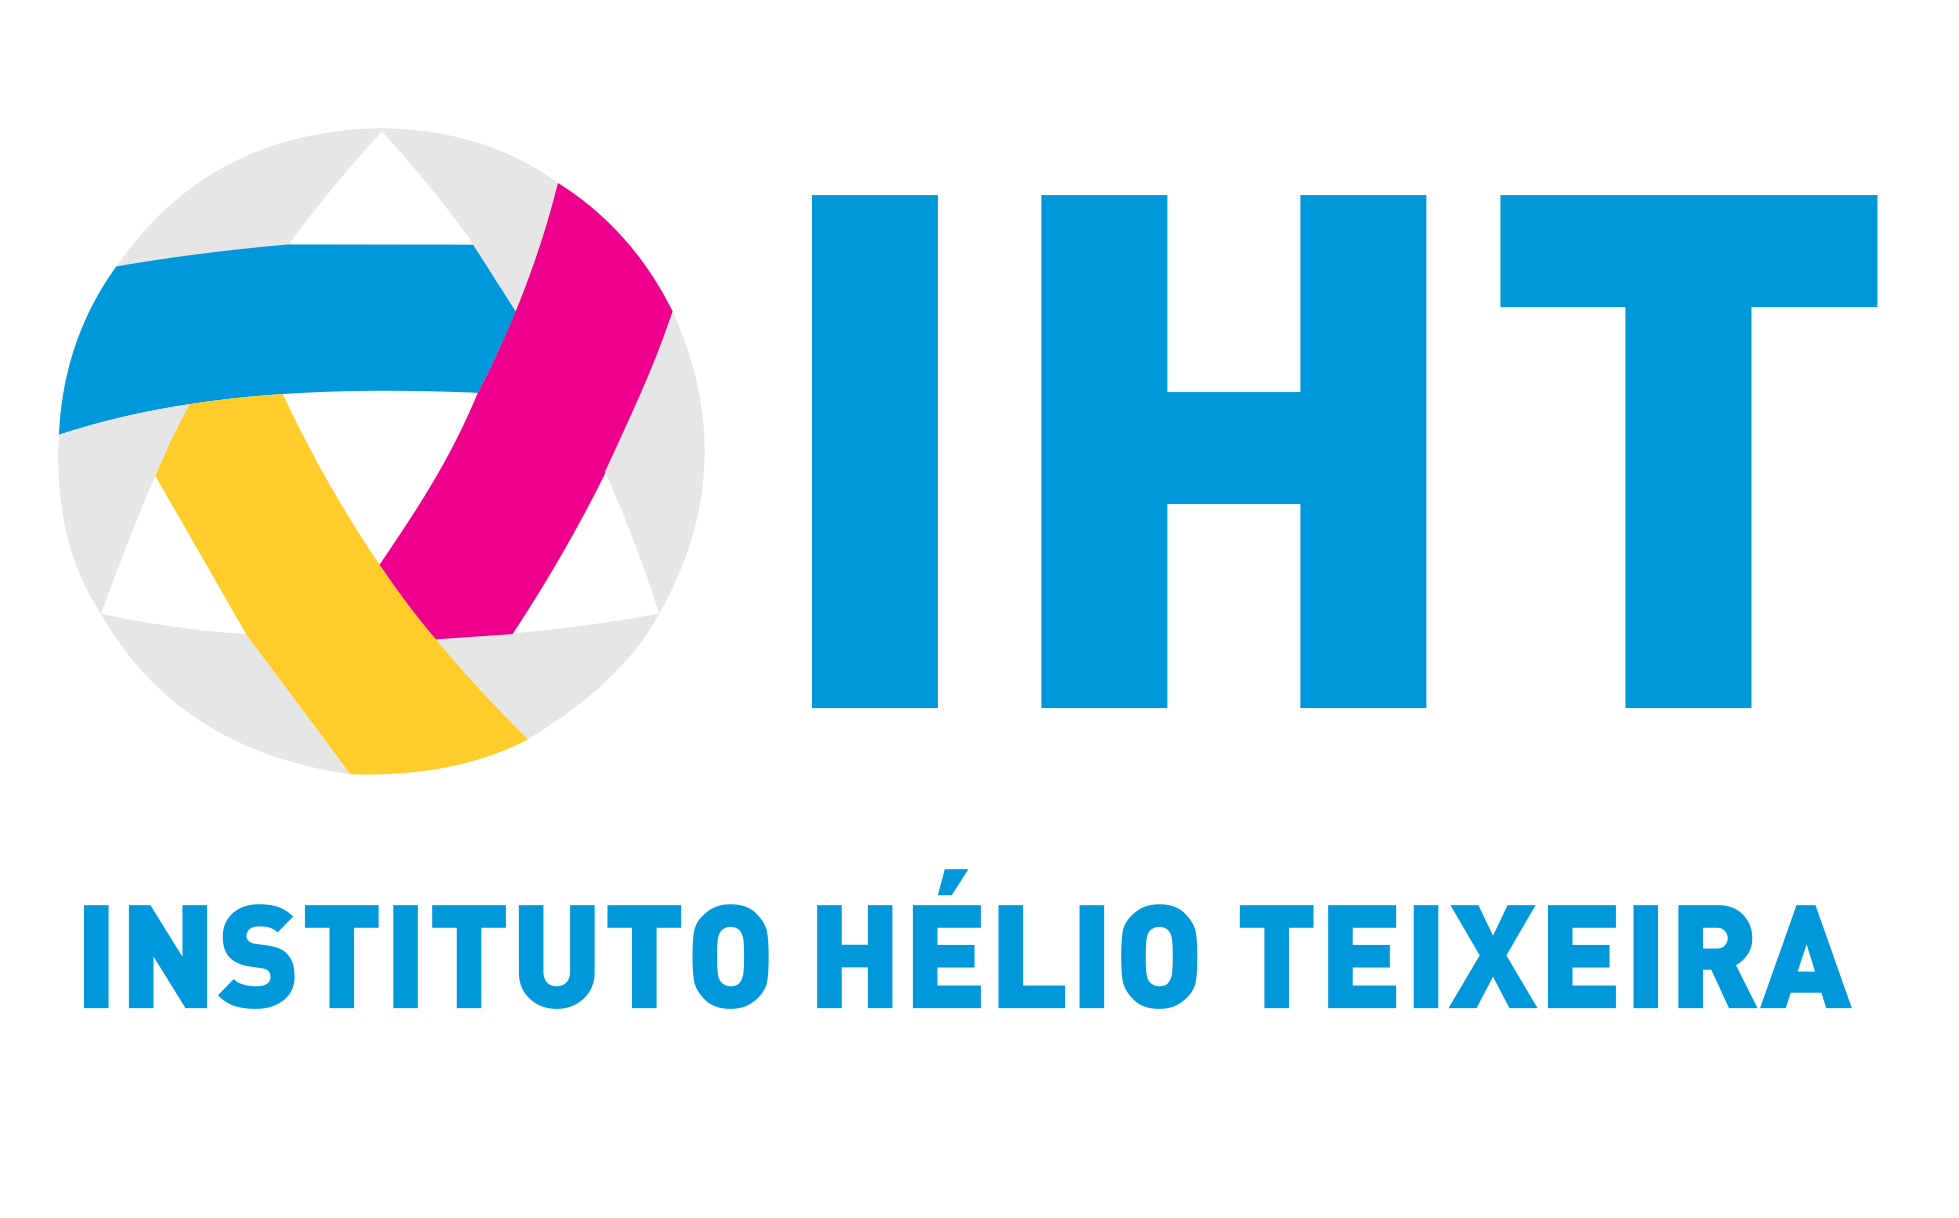 Instituto Helio Teixeira